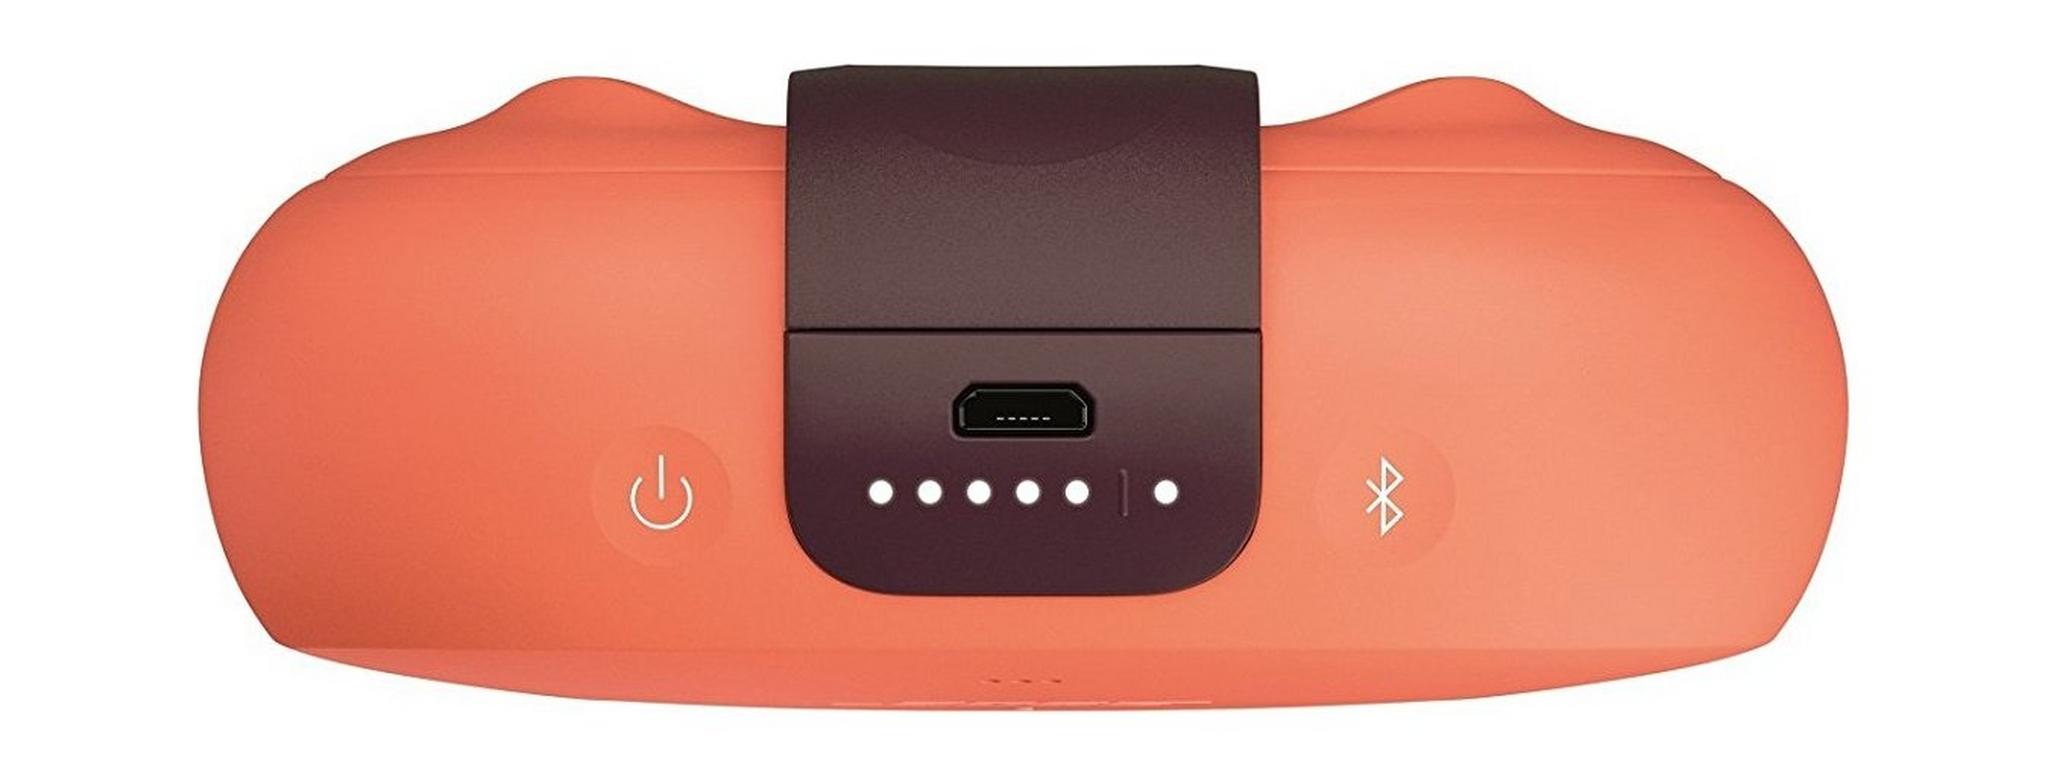 Bose SoundLink Micro Waterproof Bluetooth Speaker - Bright Orange